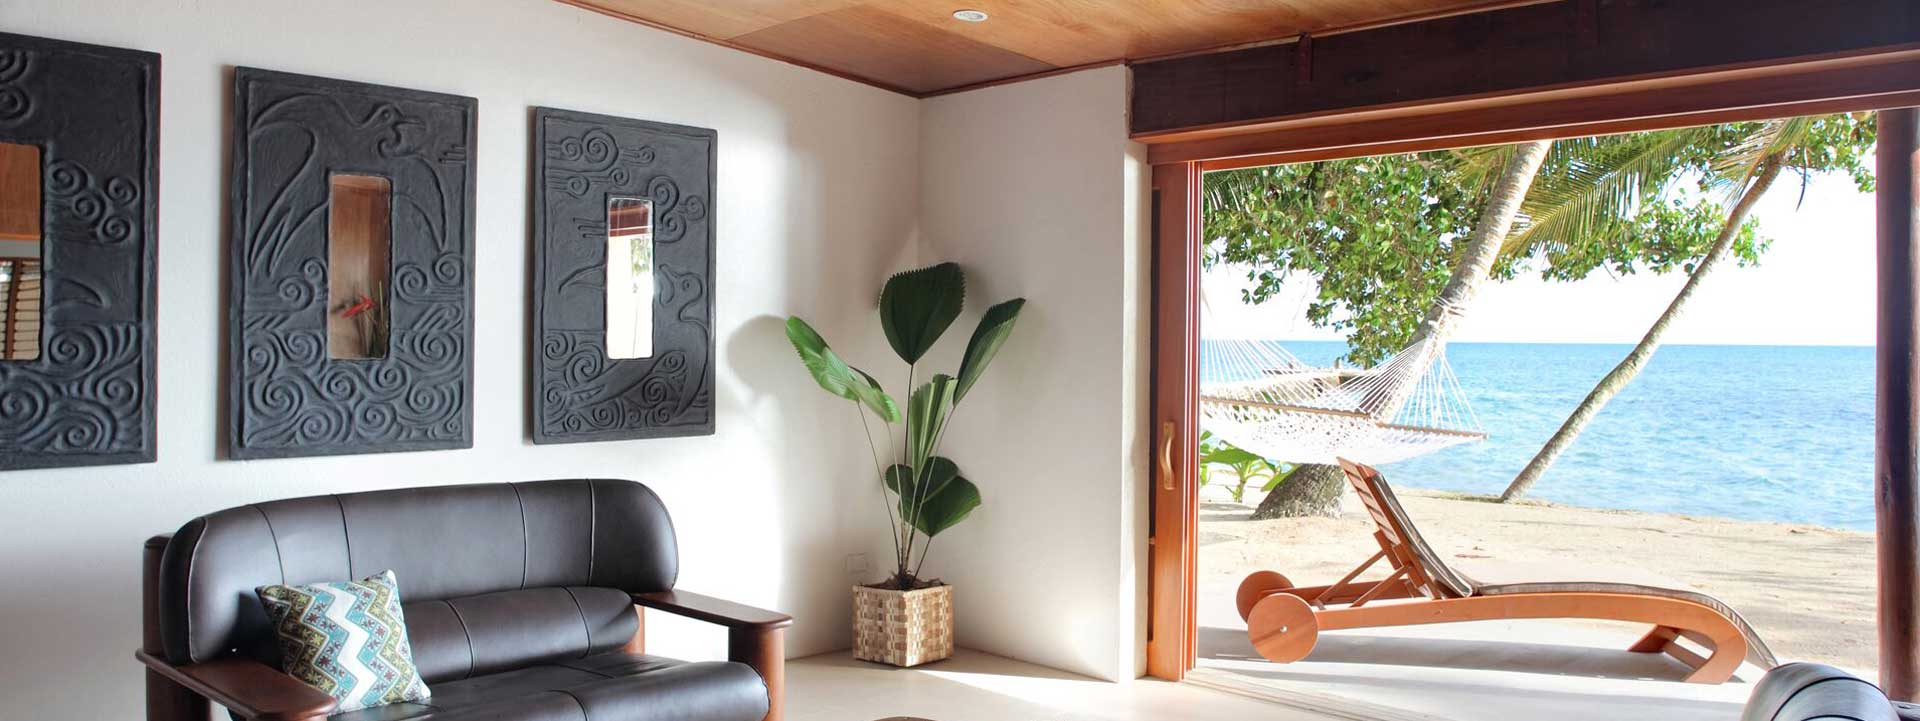 3bedroom villa in Fiji